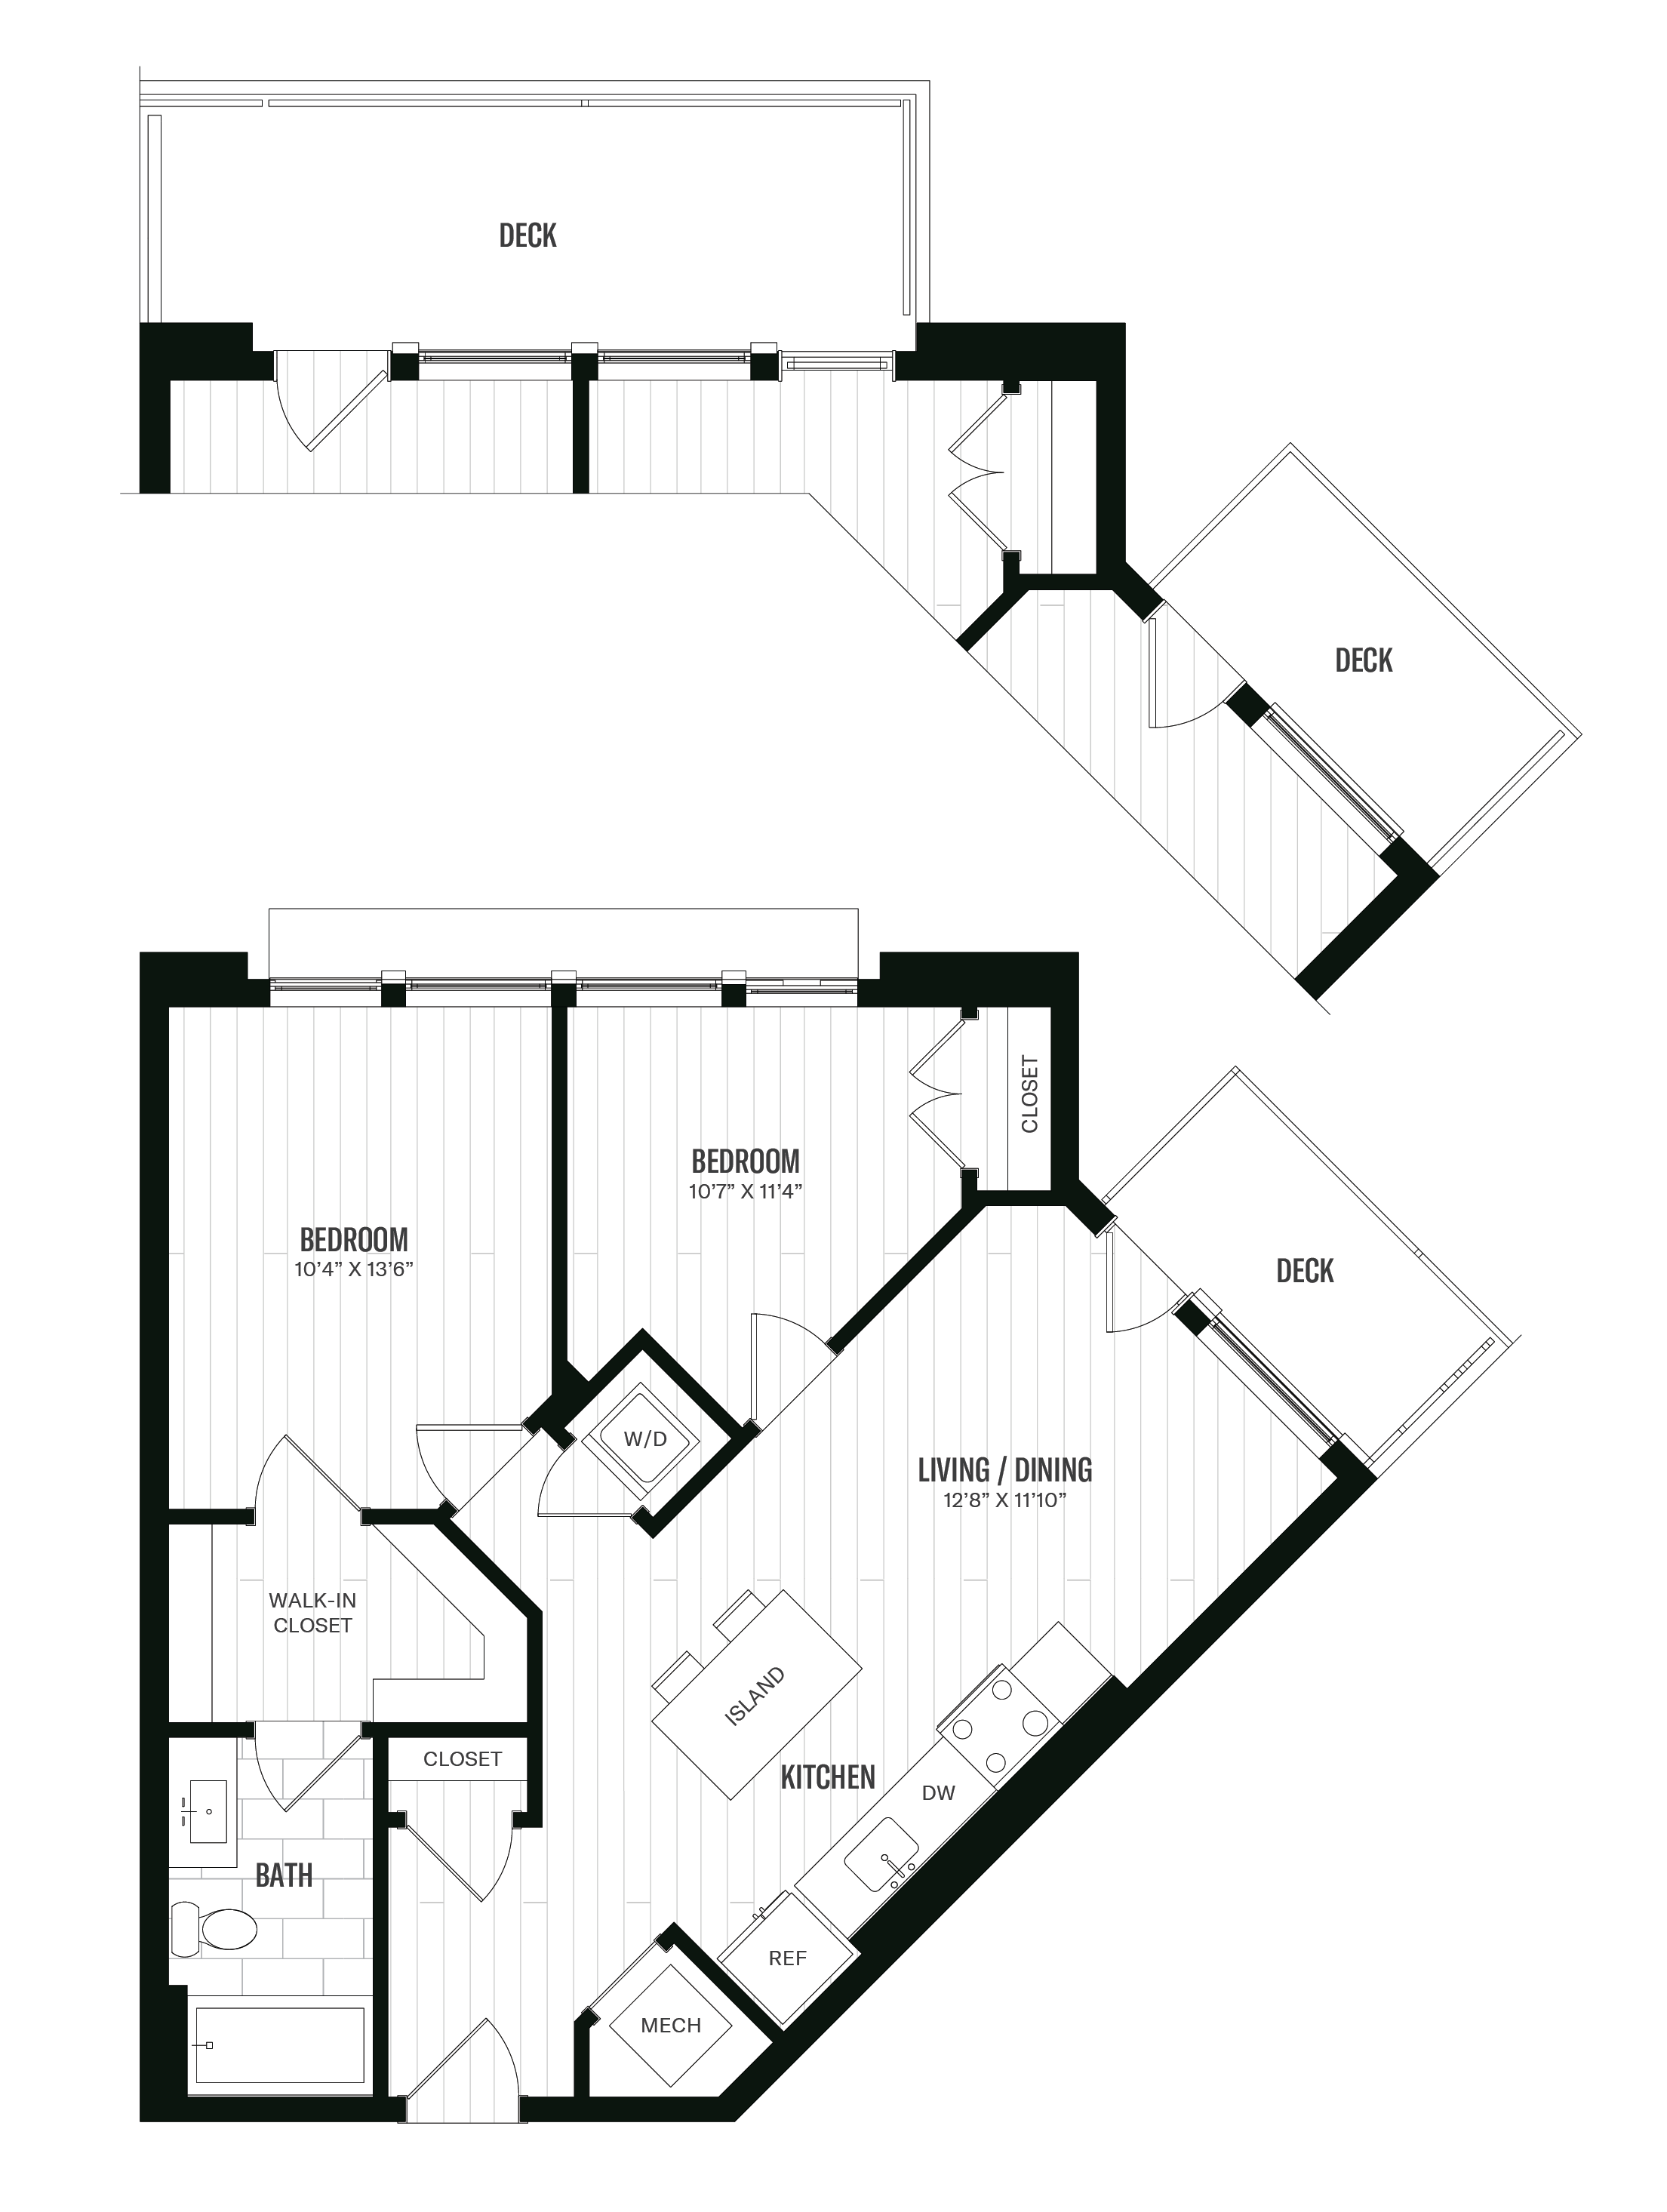 Floorplan image of unit 516